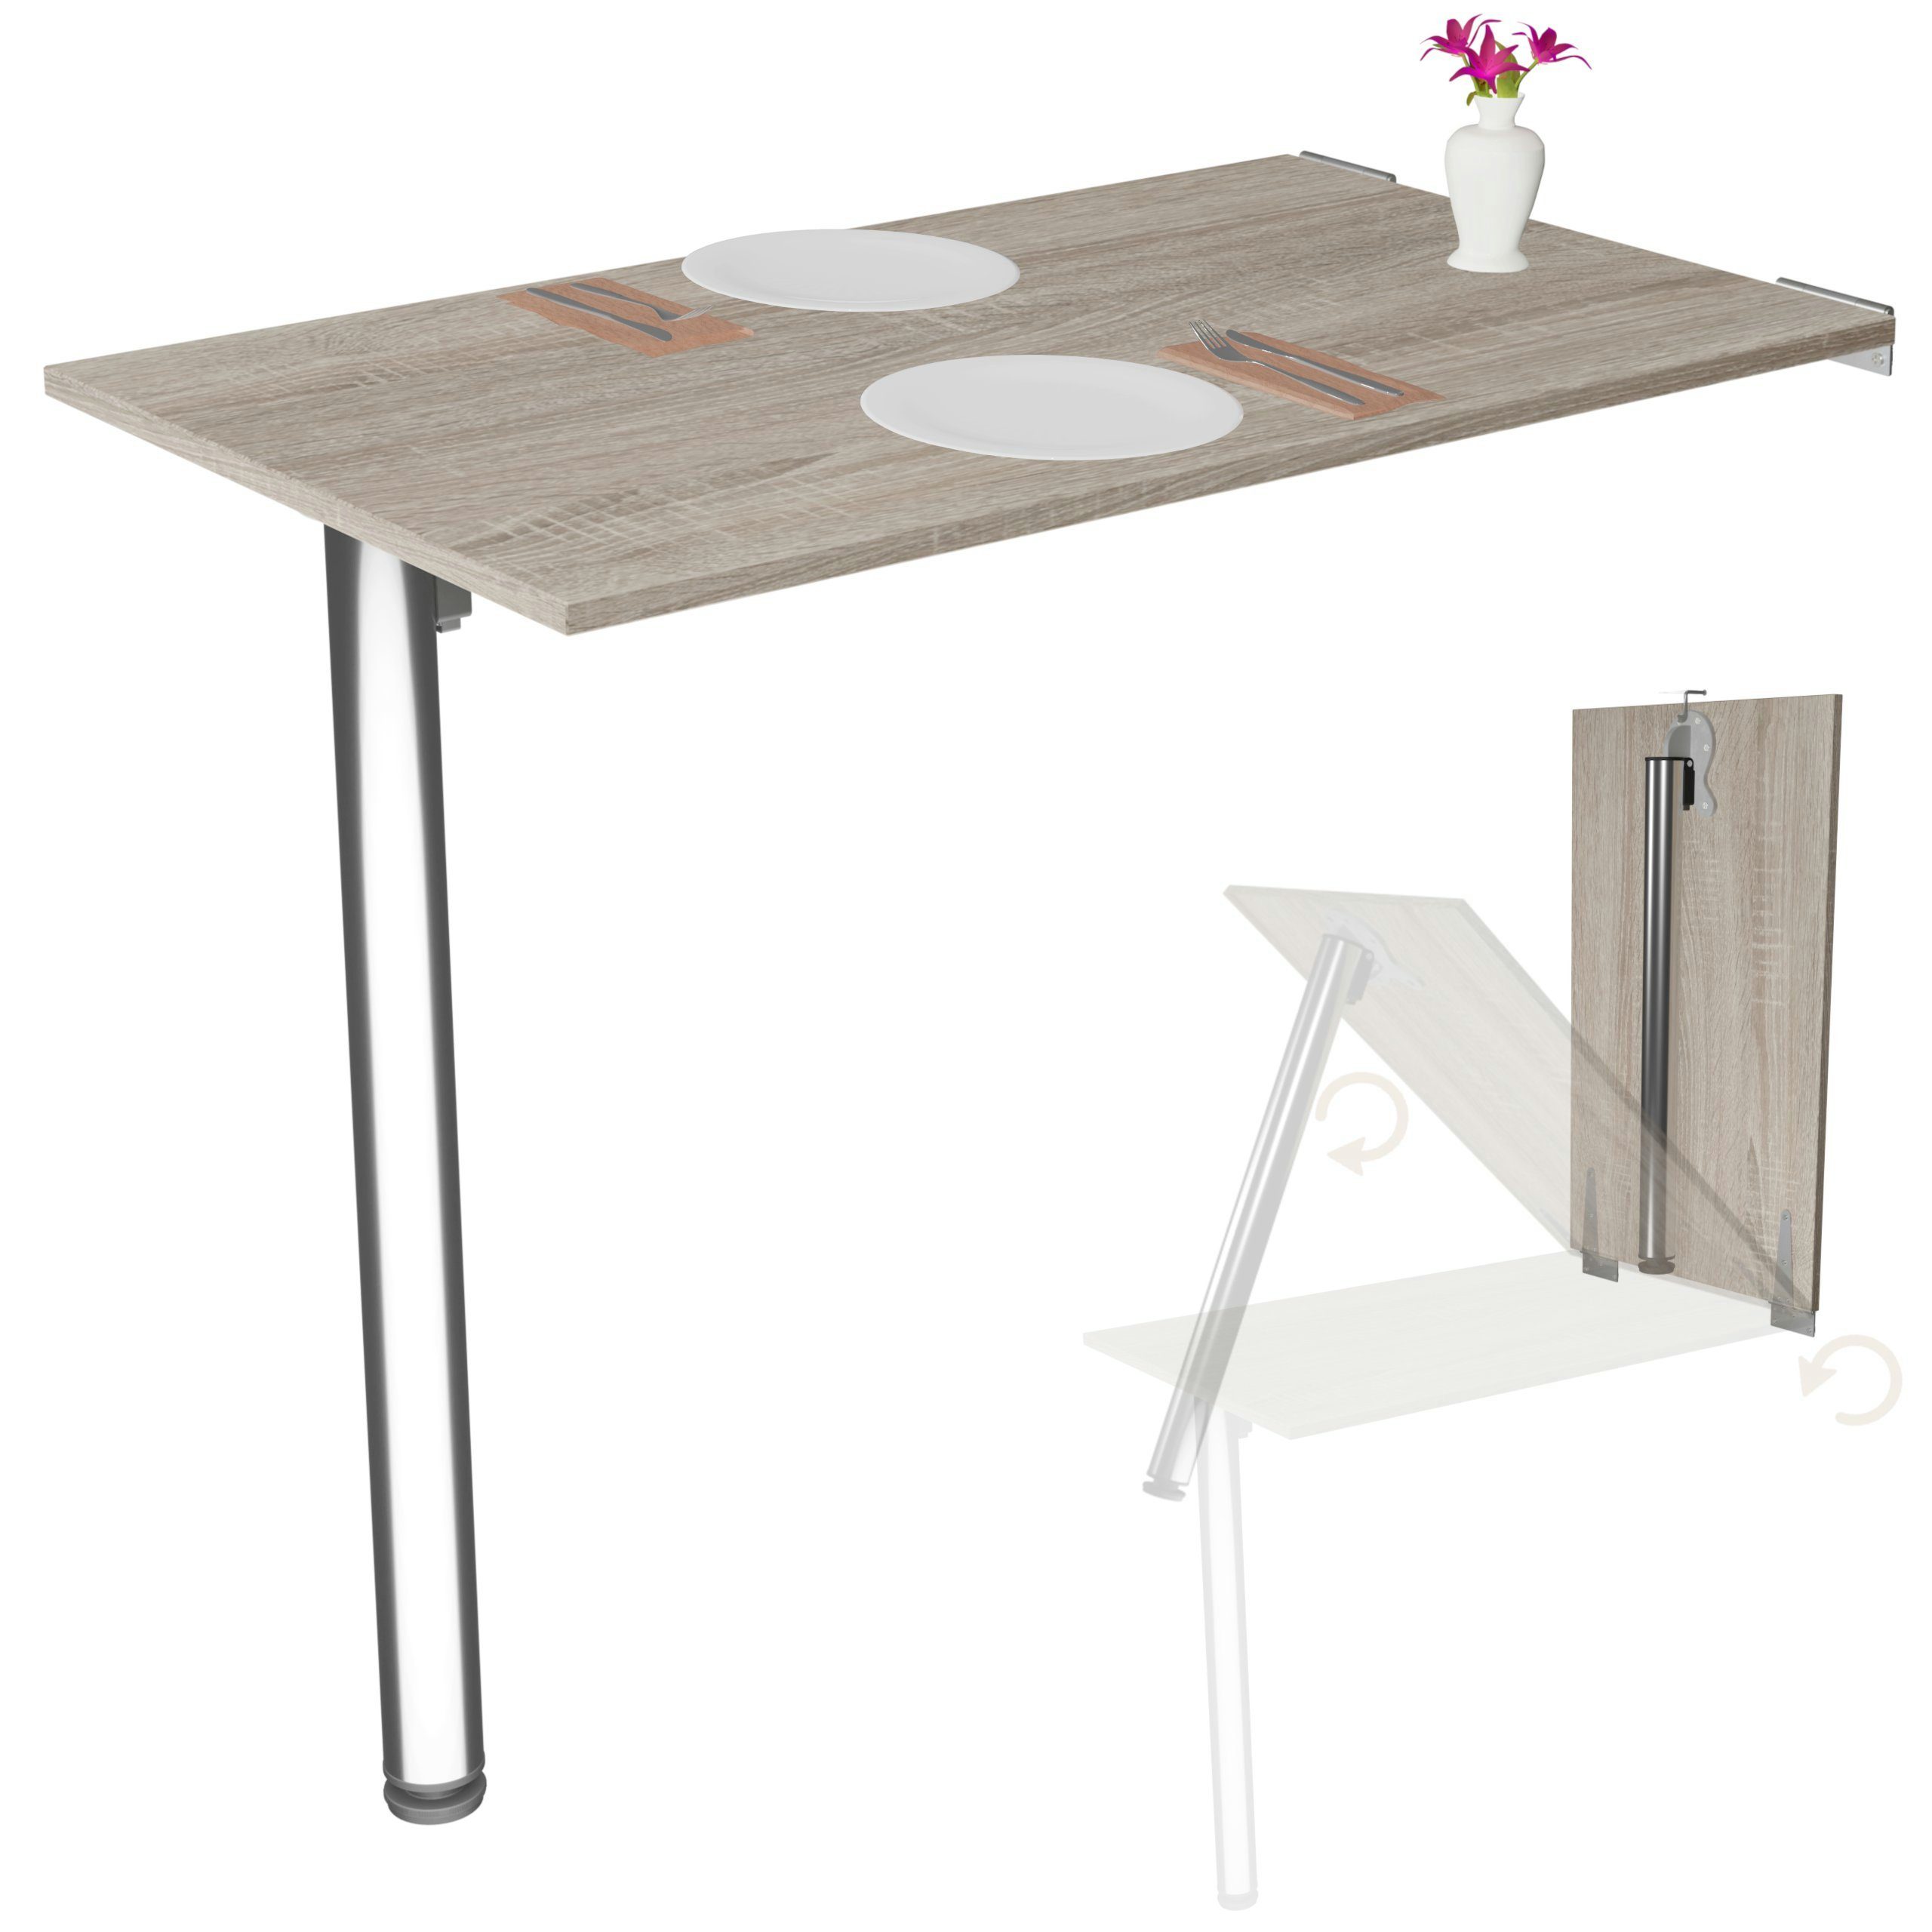 KDR Produktgestaltung Klapptisch 80x50 Wandklapptisch Esstisch Küchentisch  Schreibtisch Wand Tisch, Weiß